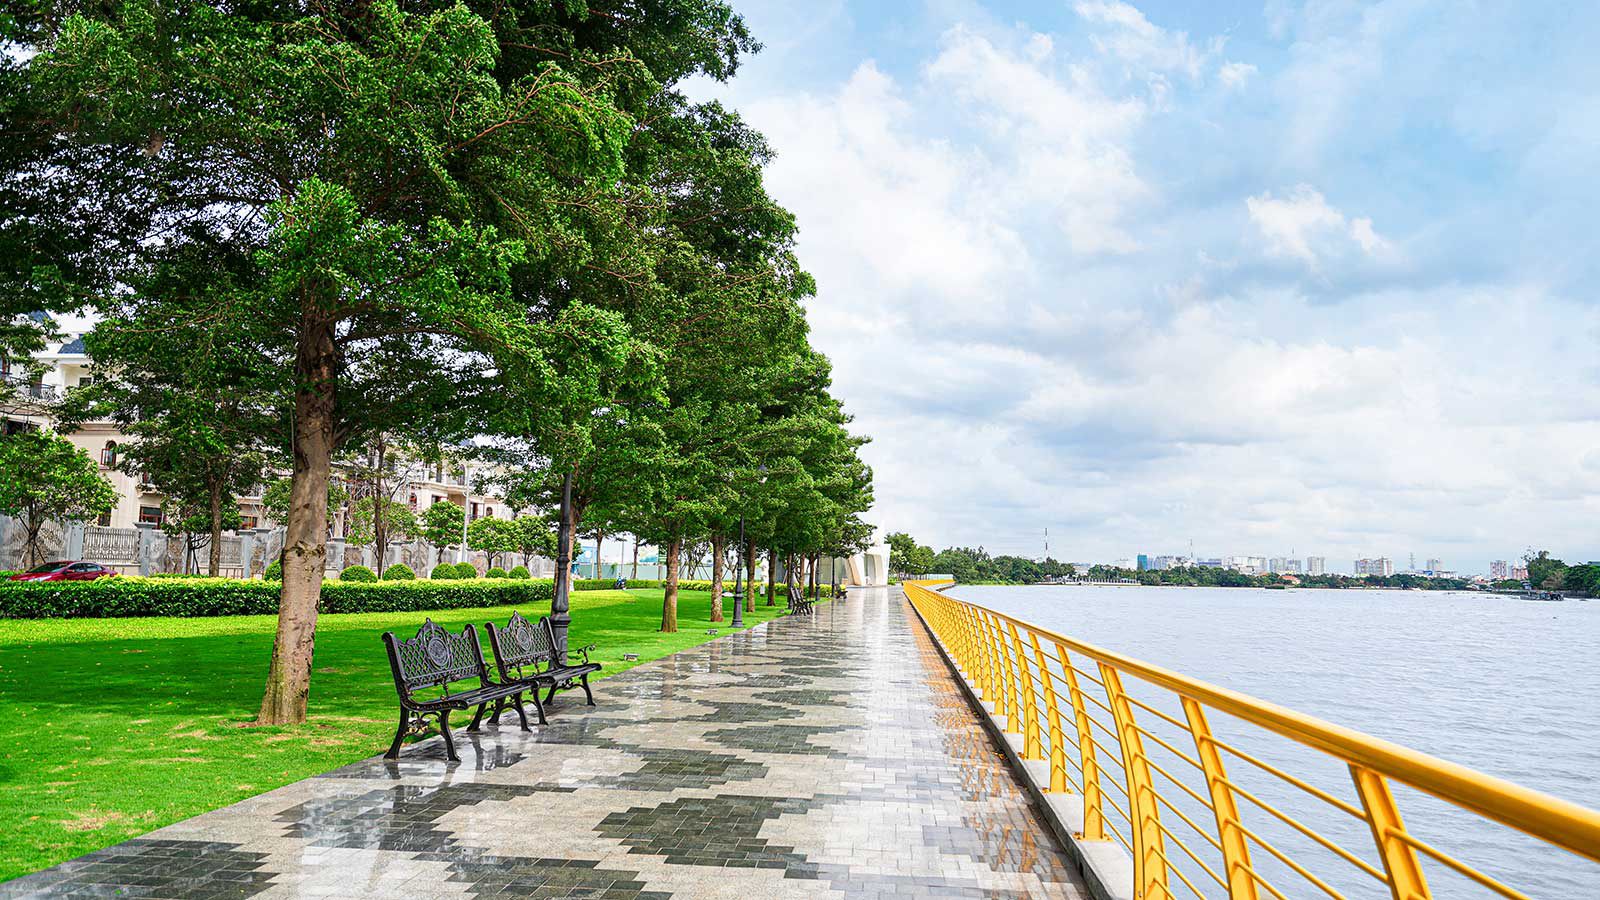 Công viên và đường dạo bộ chạy dọc bờ sông Sài Gòn dài 3.4km tại khu đô thị Vạn Phúc City.